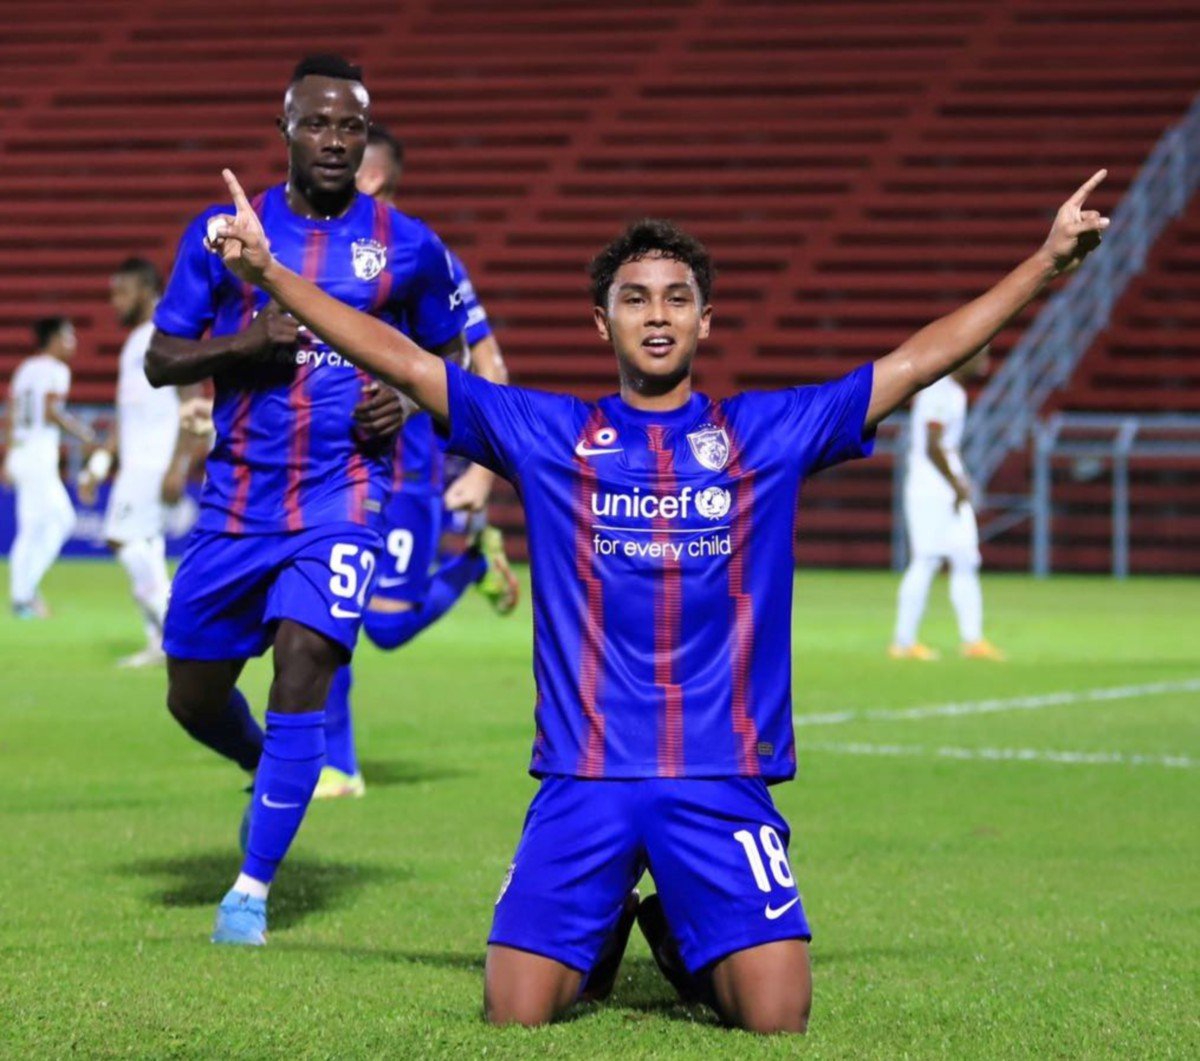 DARYL Sham gembira selepas menjaringkan gol pada aksi menentang Kelantan United FC. -FOTO ihsan Johor Southern Tigers.